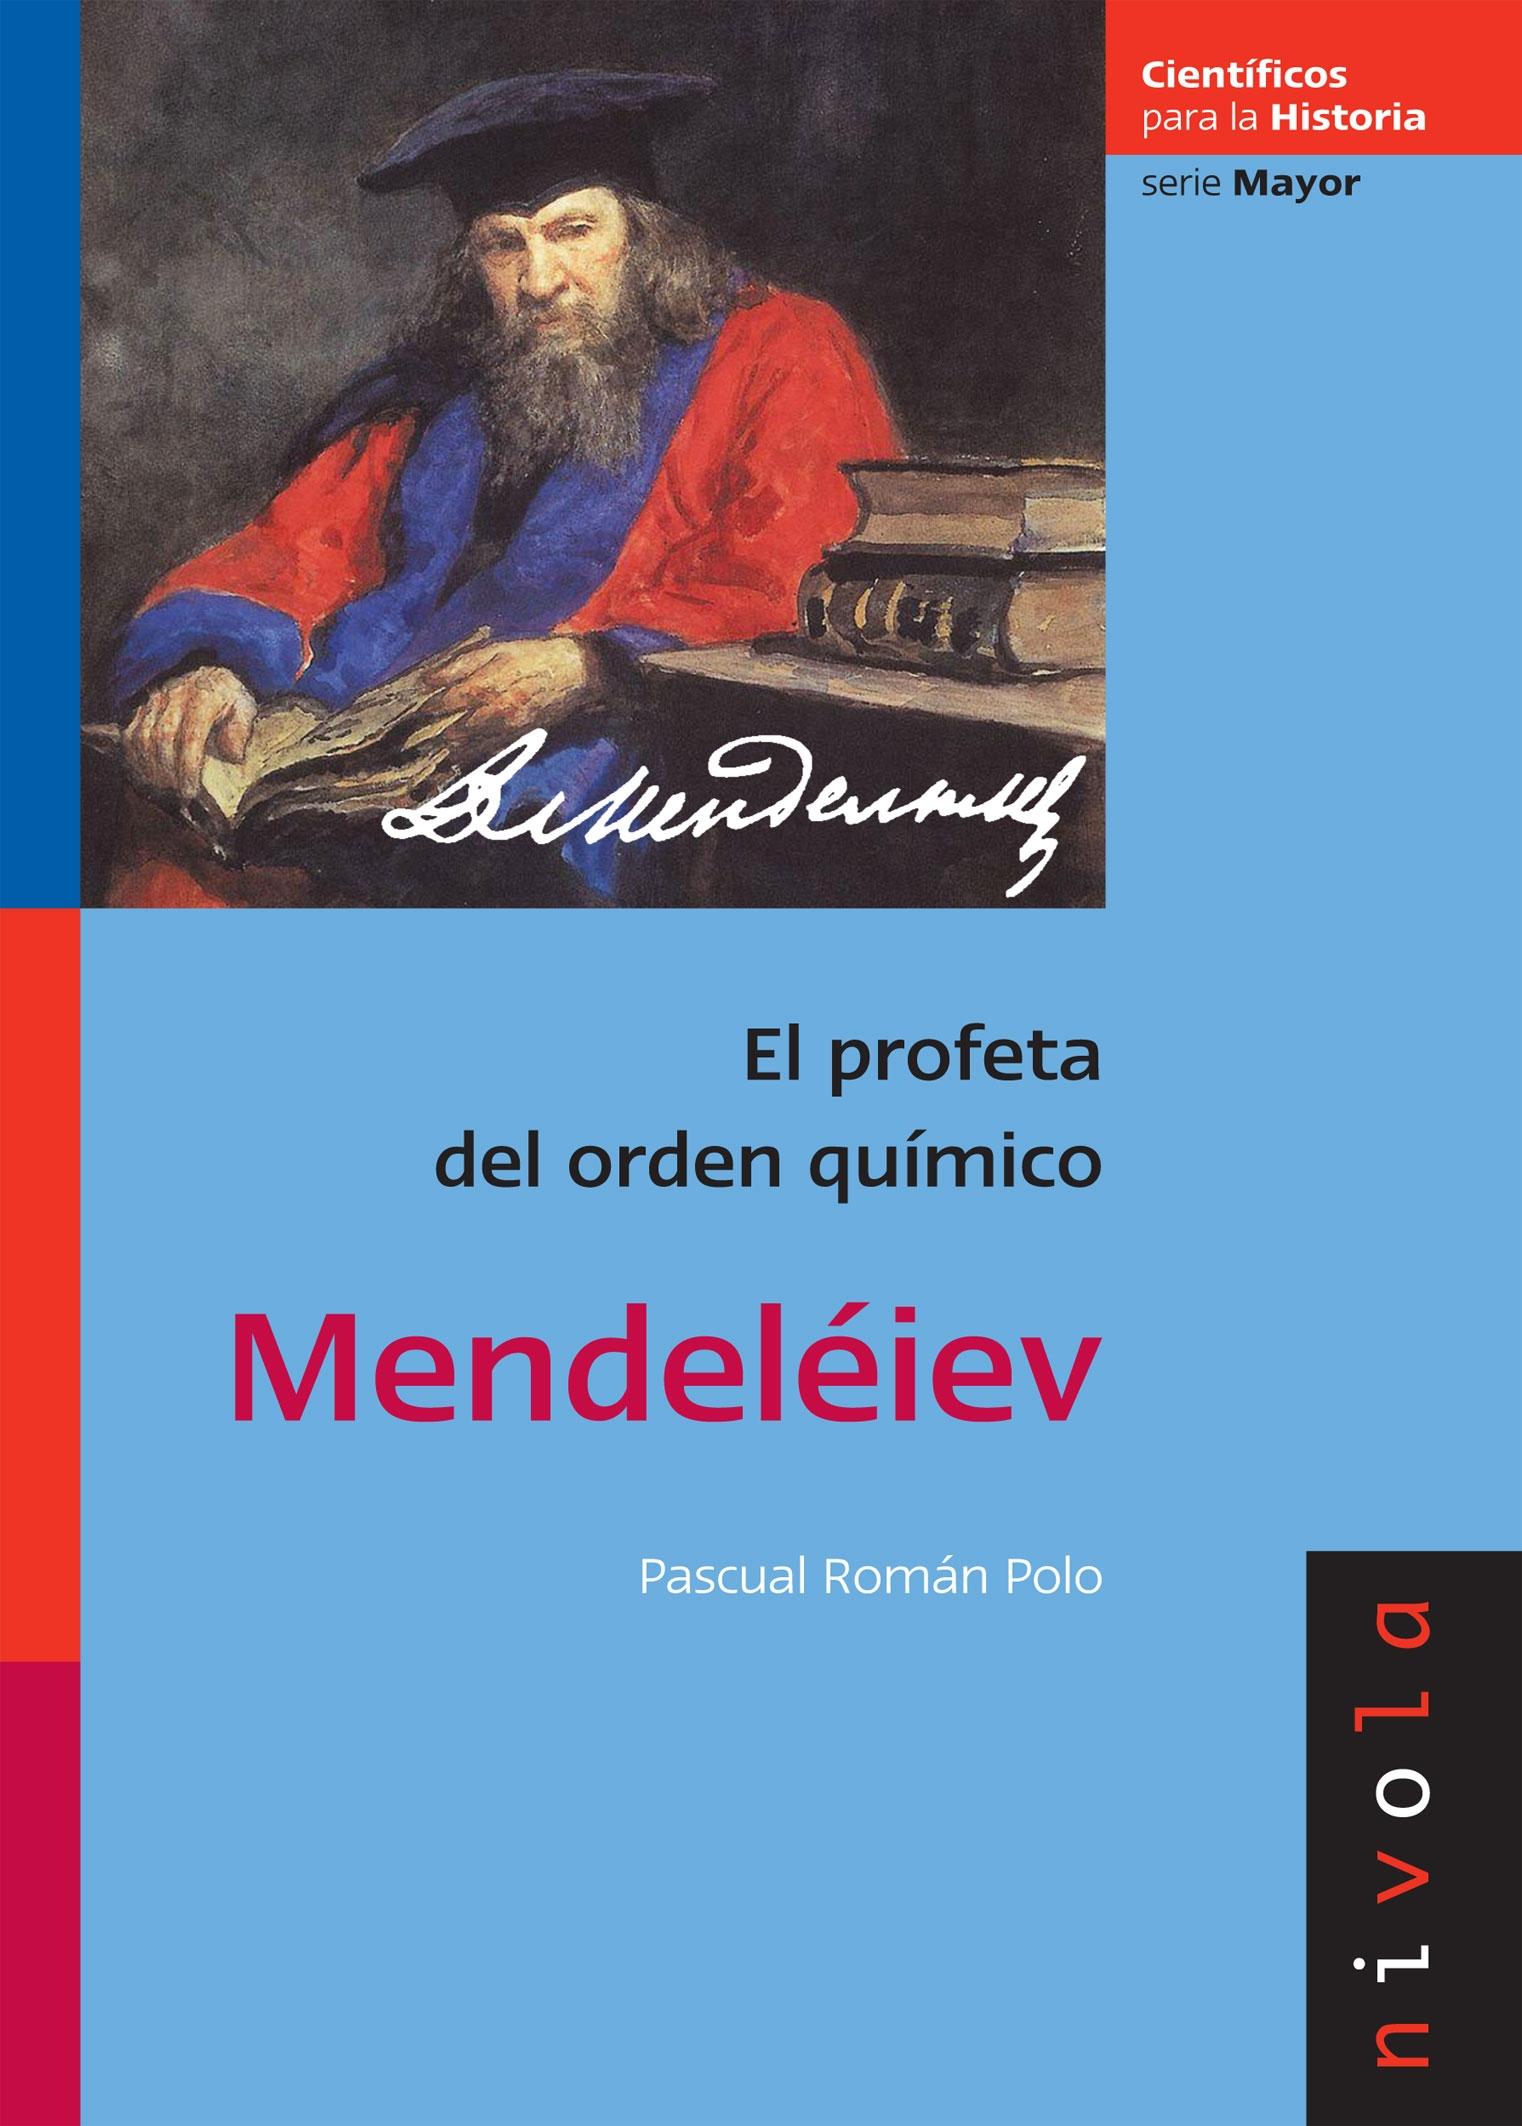 Mendeléiev "El profeta del orden químico"